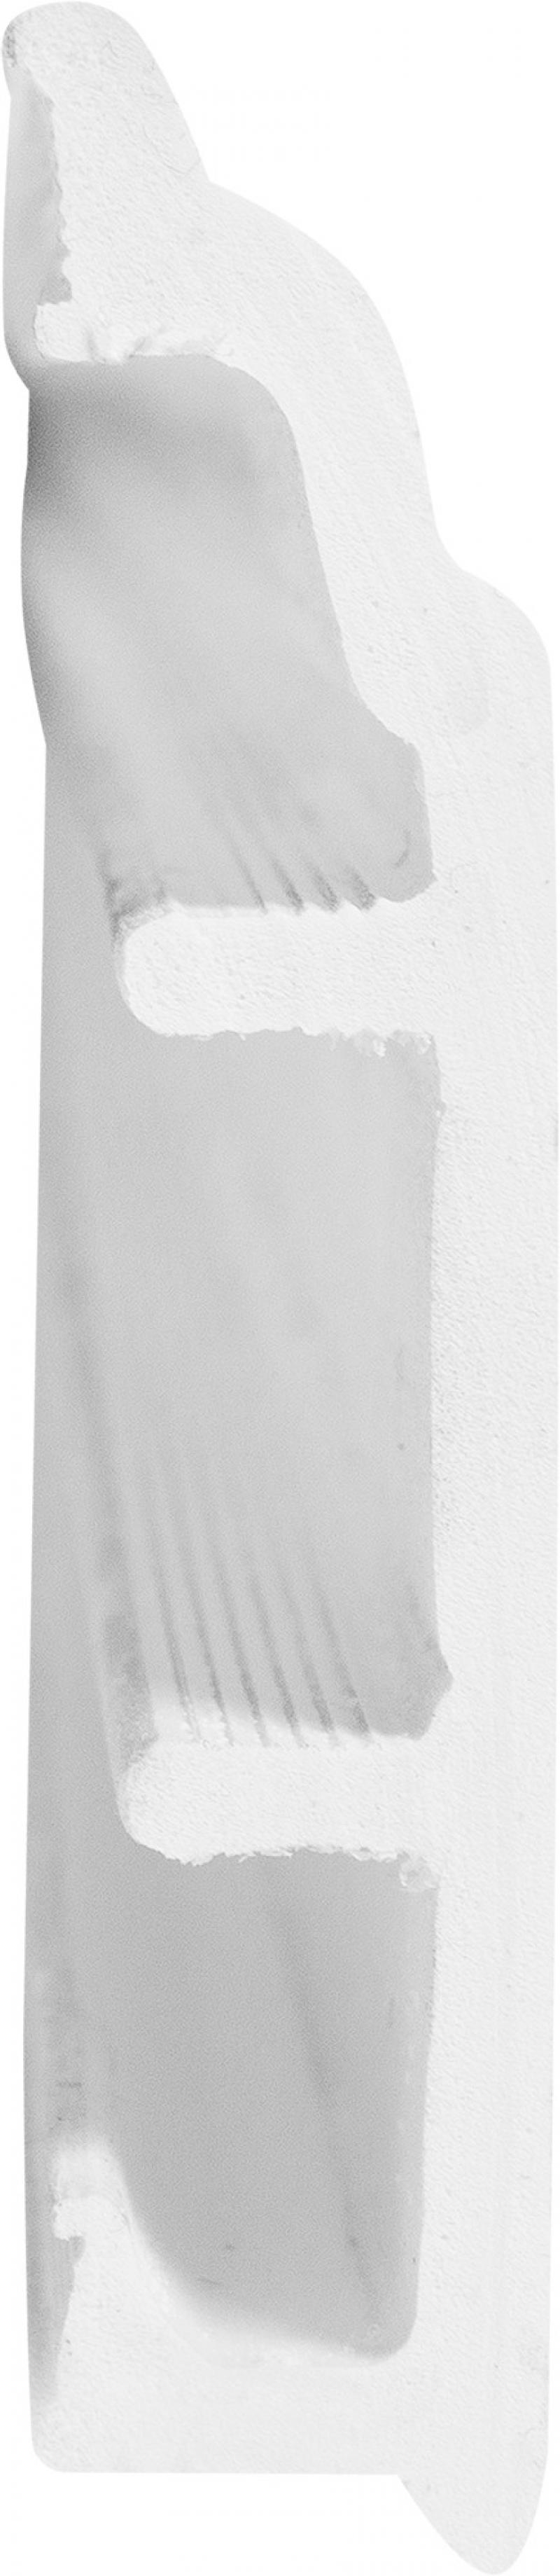 Плинтус напольный вспененный ПВХ под покраску 8 см 2.5 м цвет белый